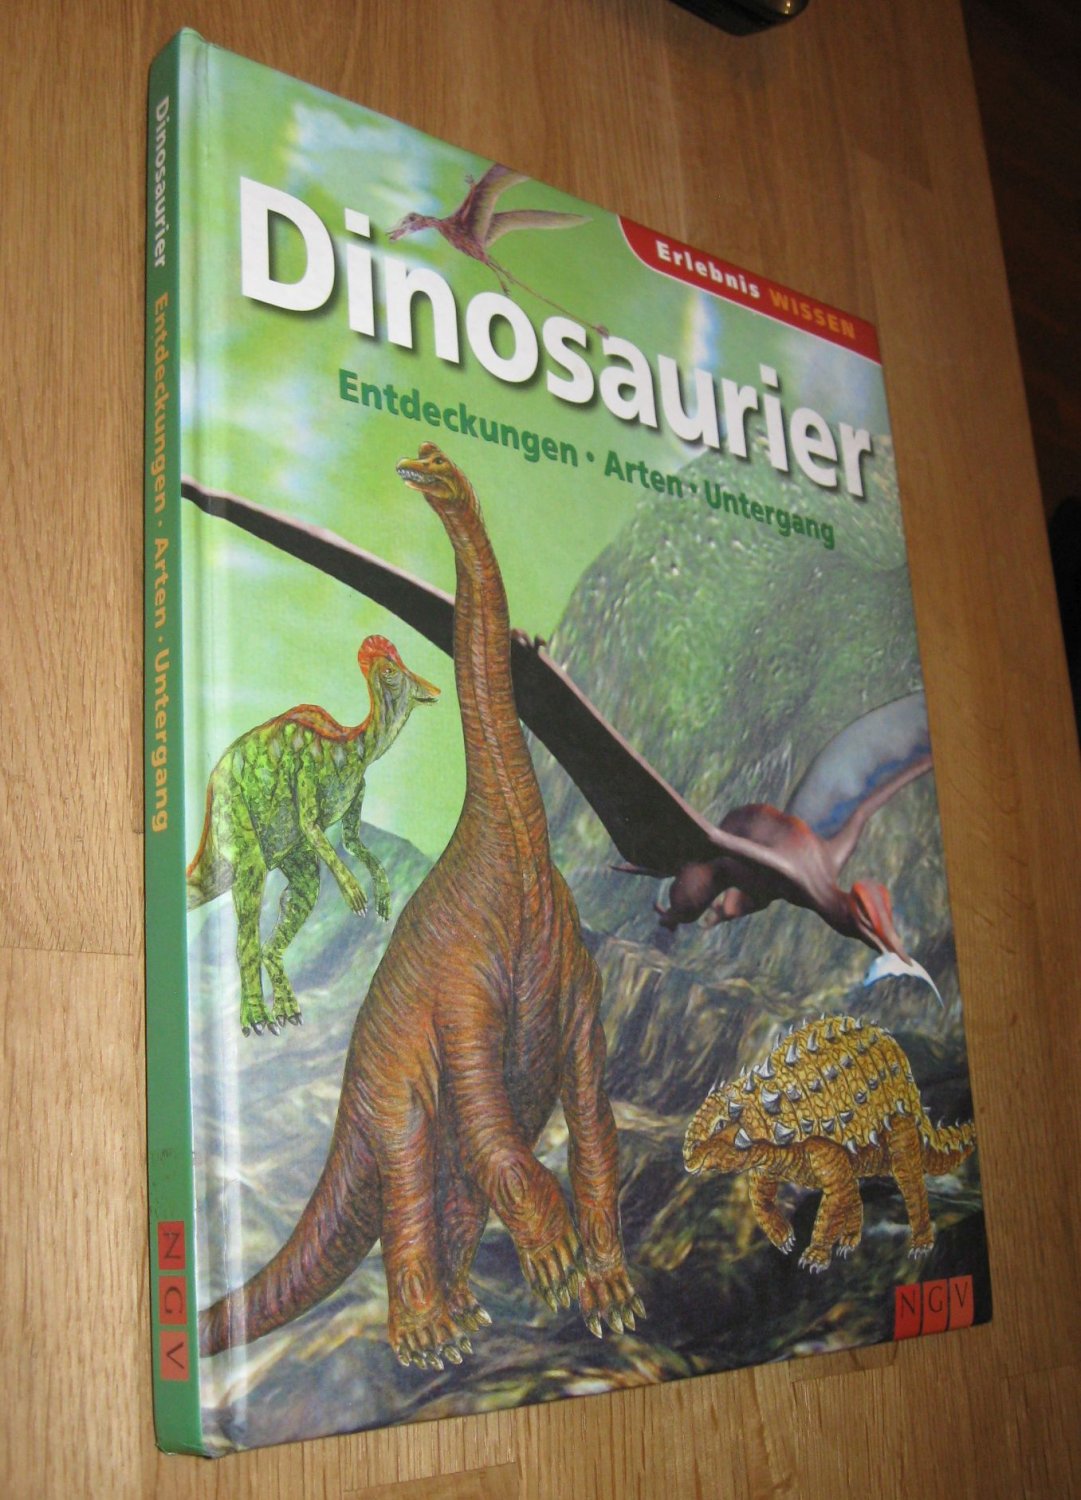 Dinosaurier ; Entdeckungen - Arten - Untergang , - Diverse